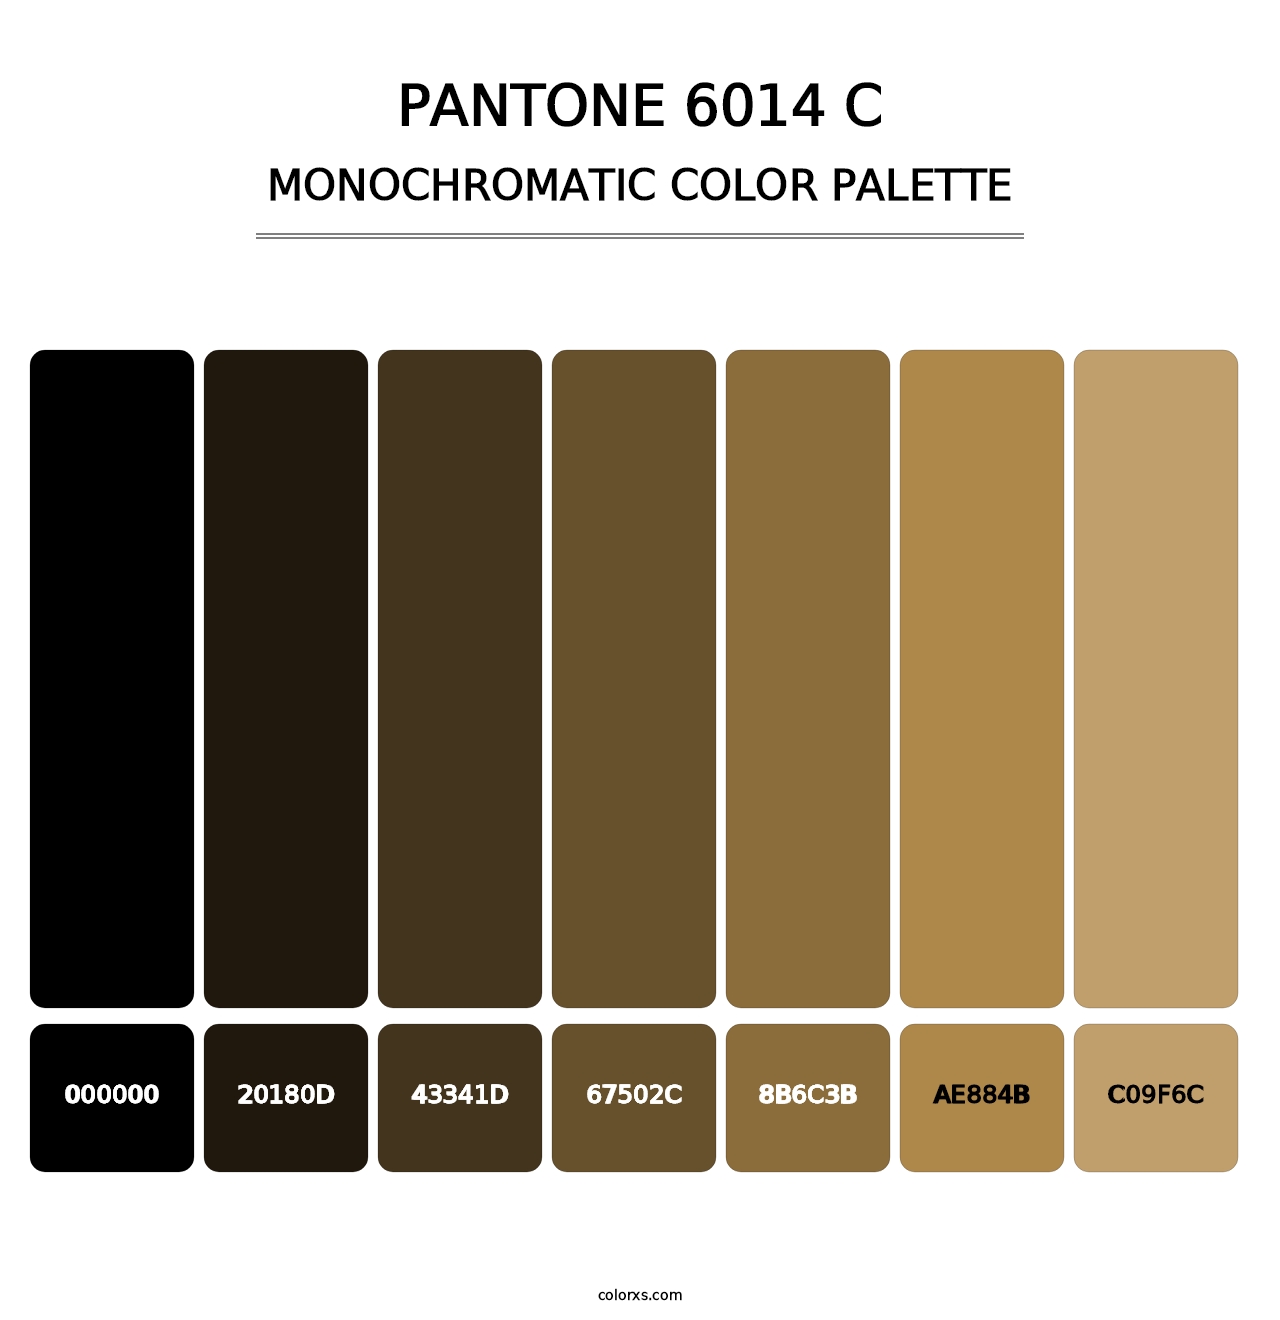 PANTONE 6014 C - Monochromatic Color Palette